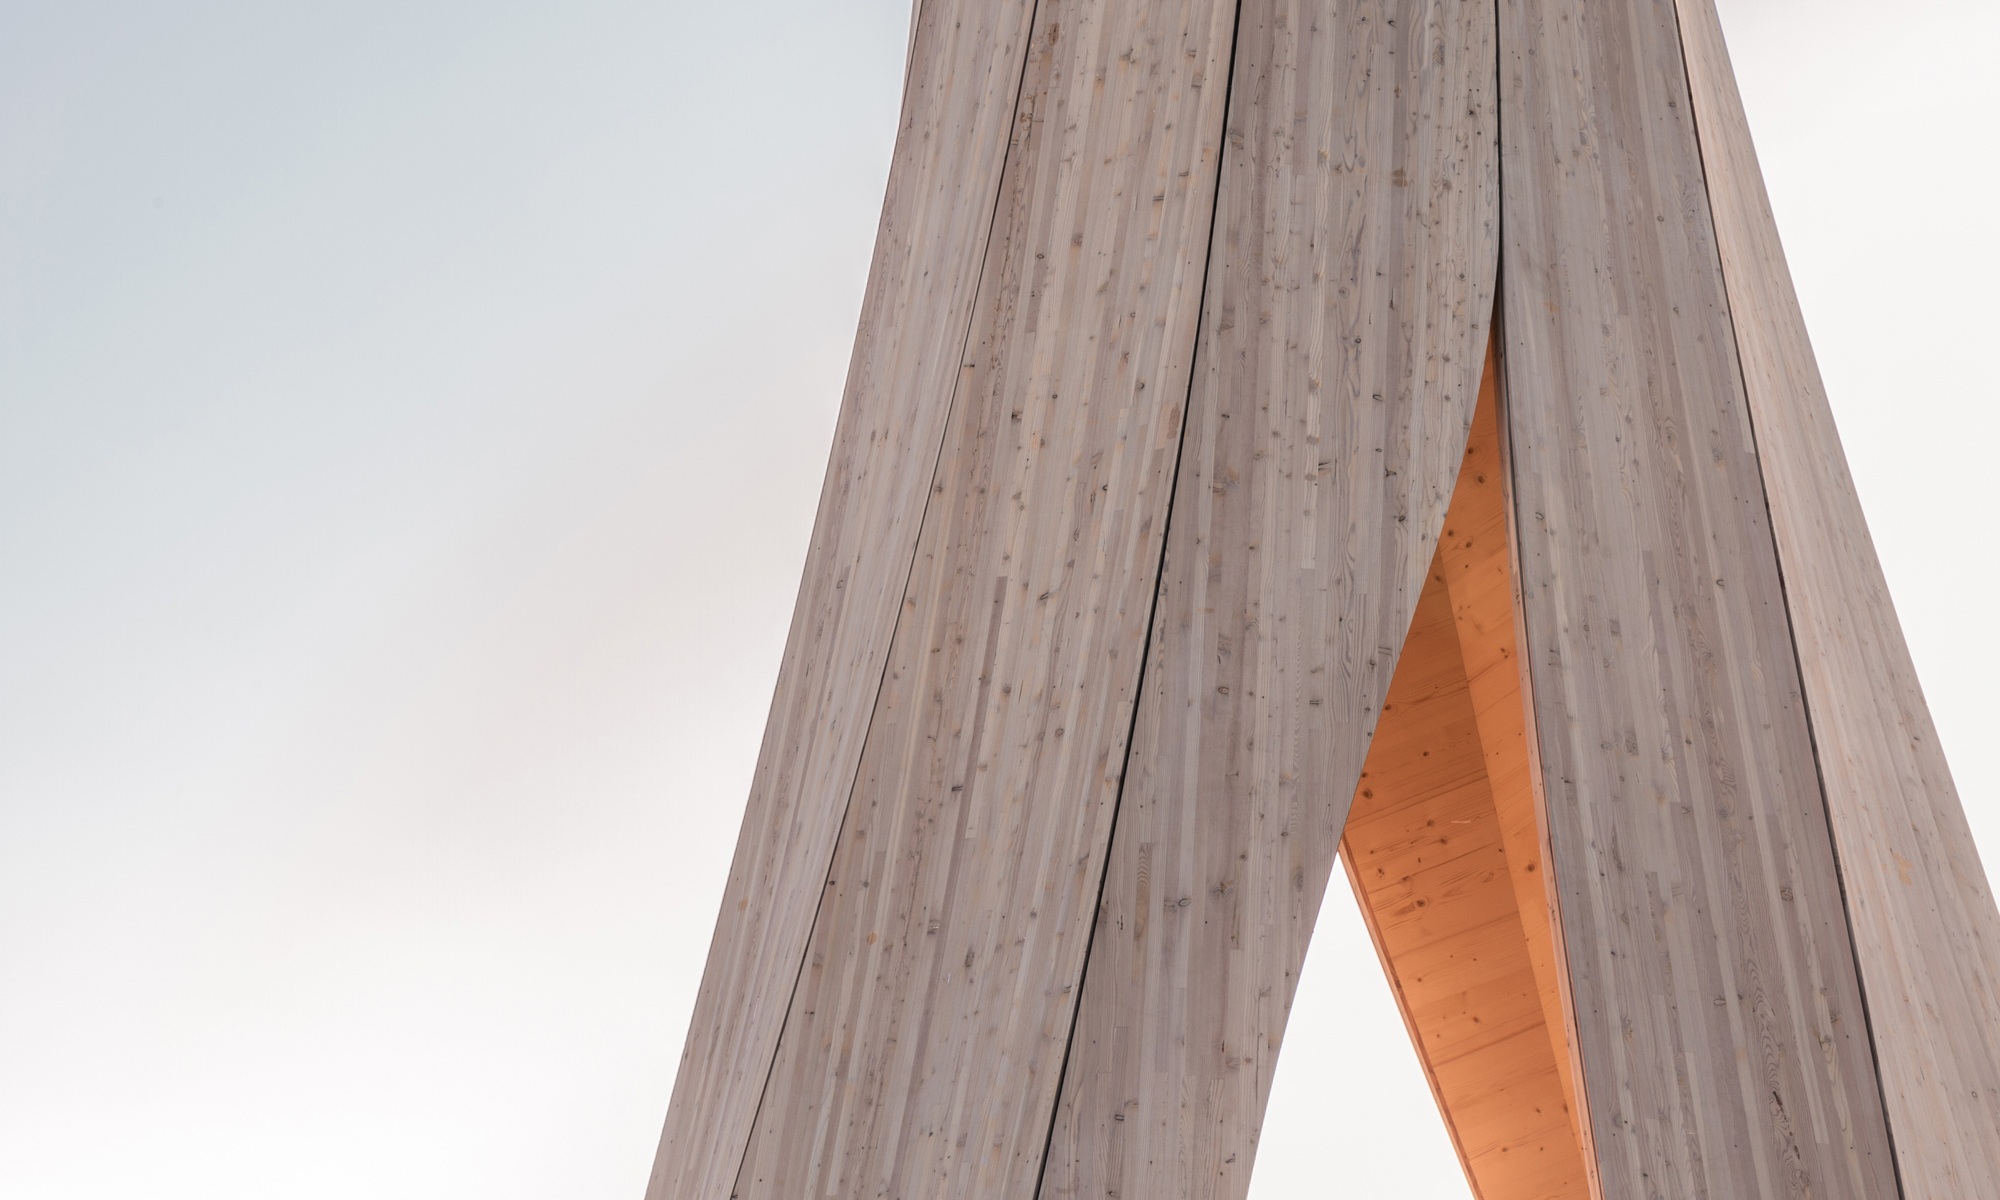 Die Detailaufnahme des Urbach Towers zeigt die selbst formend hergestellte Holzstruktur von aussen